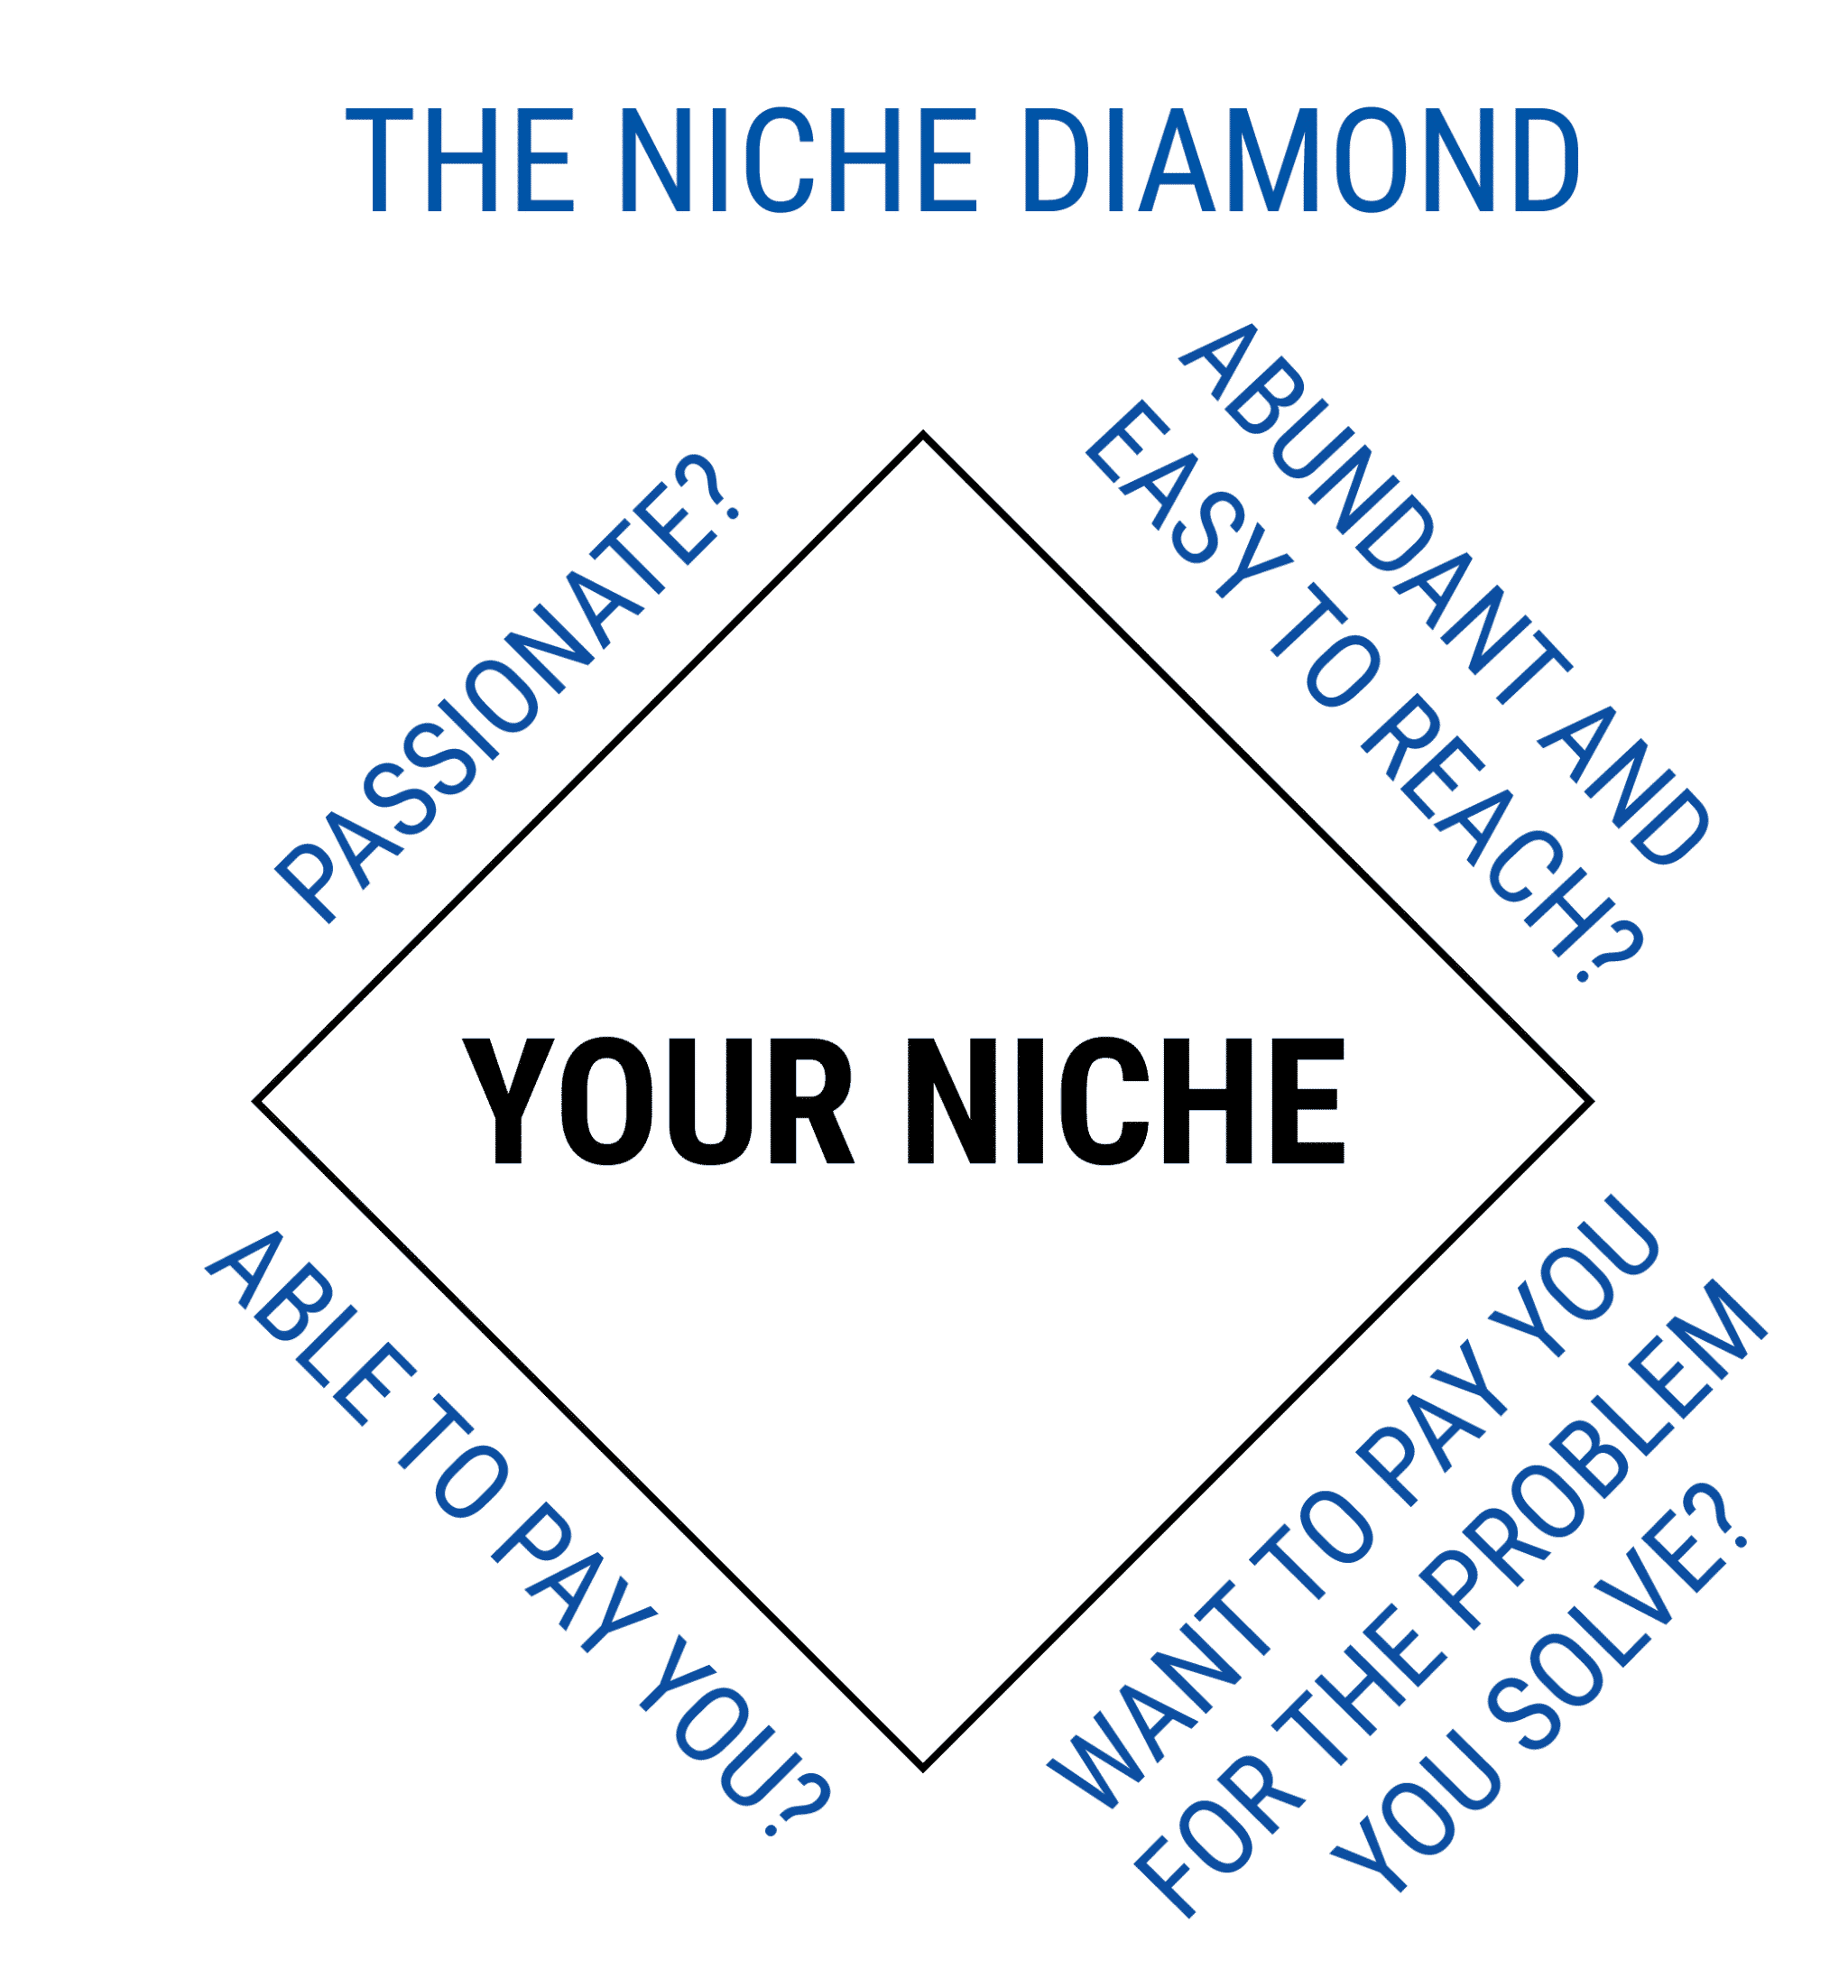 THE NICHE DIAMOND